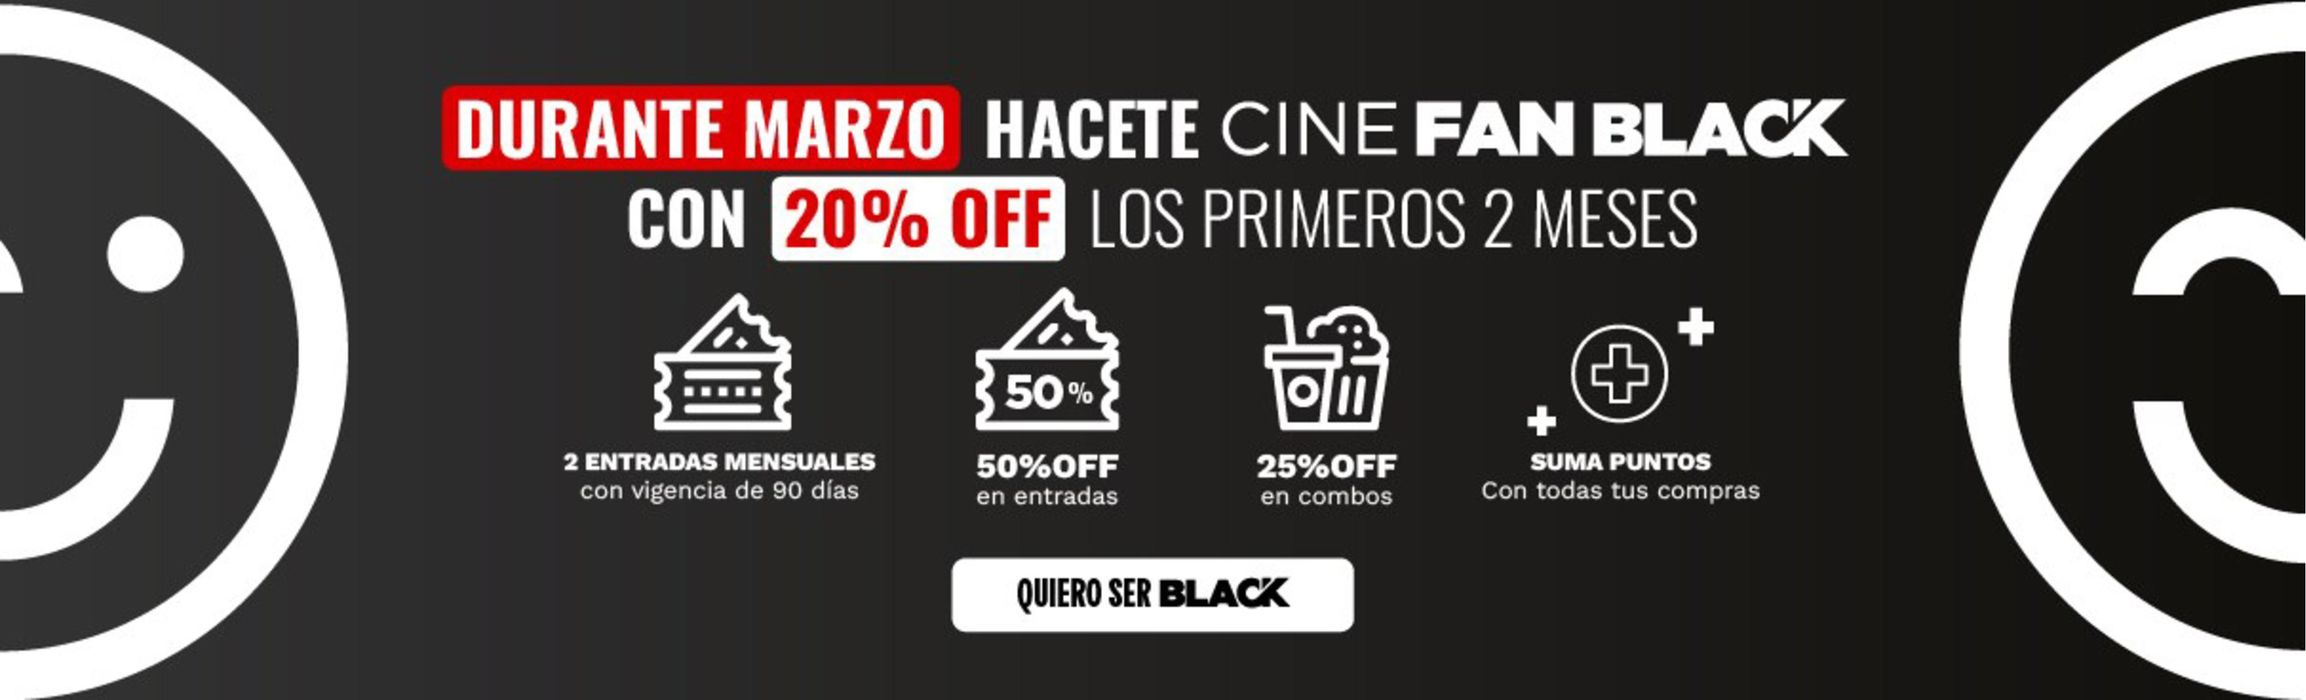 Catálogo Cinemark Hoyts en Martínez | 50% off en entradas incluye todos los formatos | 21/3/2024 - 31/3/2024